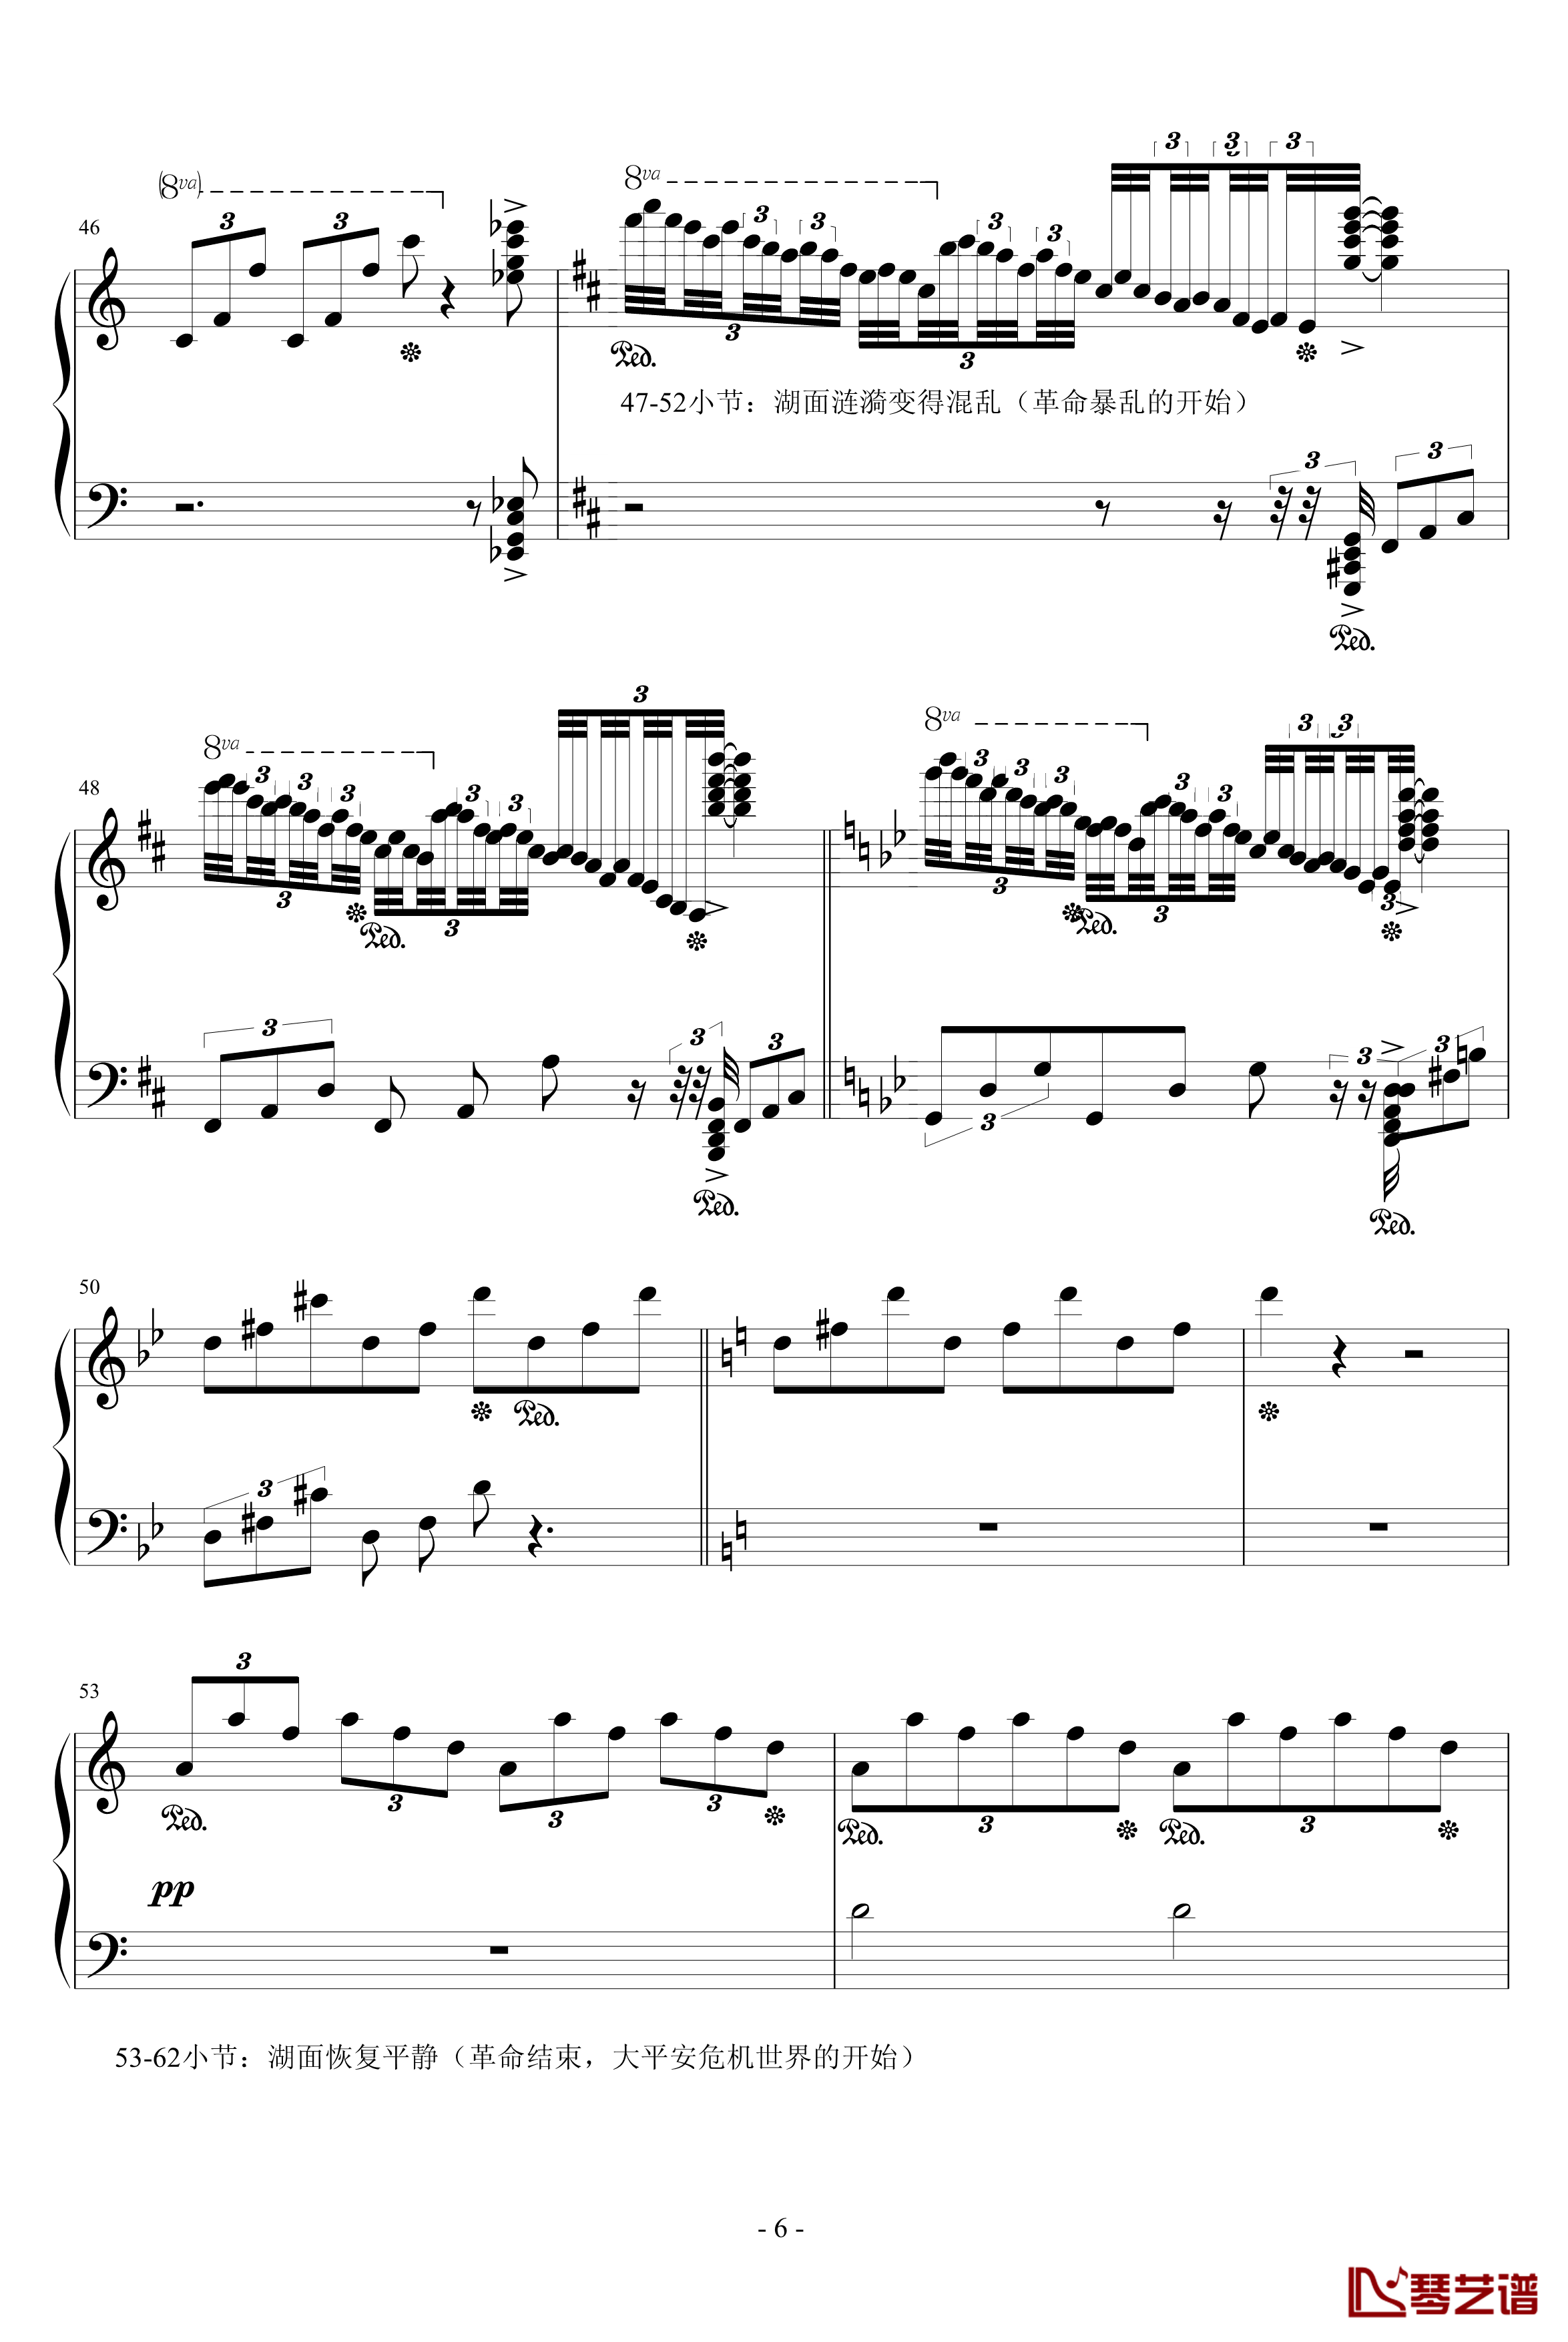 狂想曲涟漪钢琴谱-升c小调6